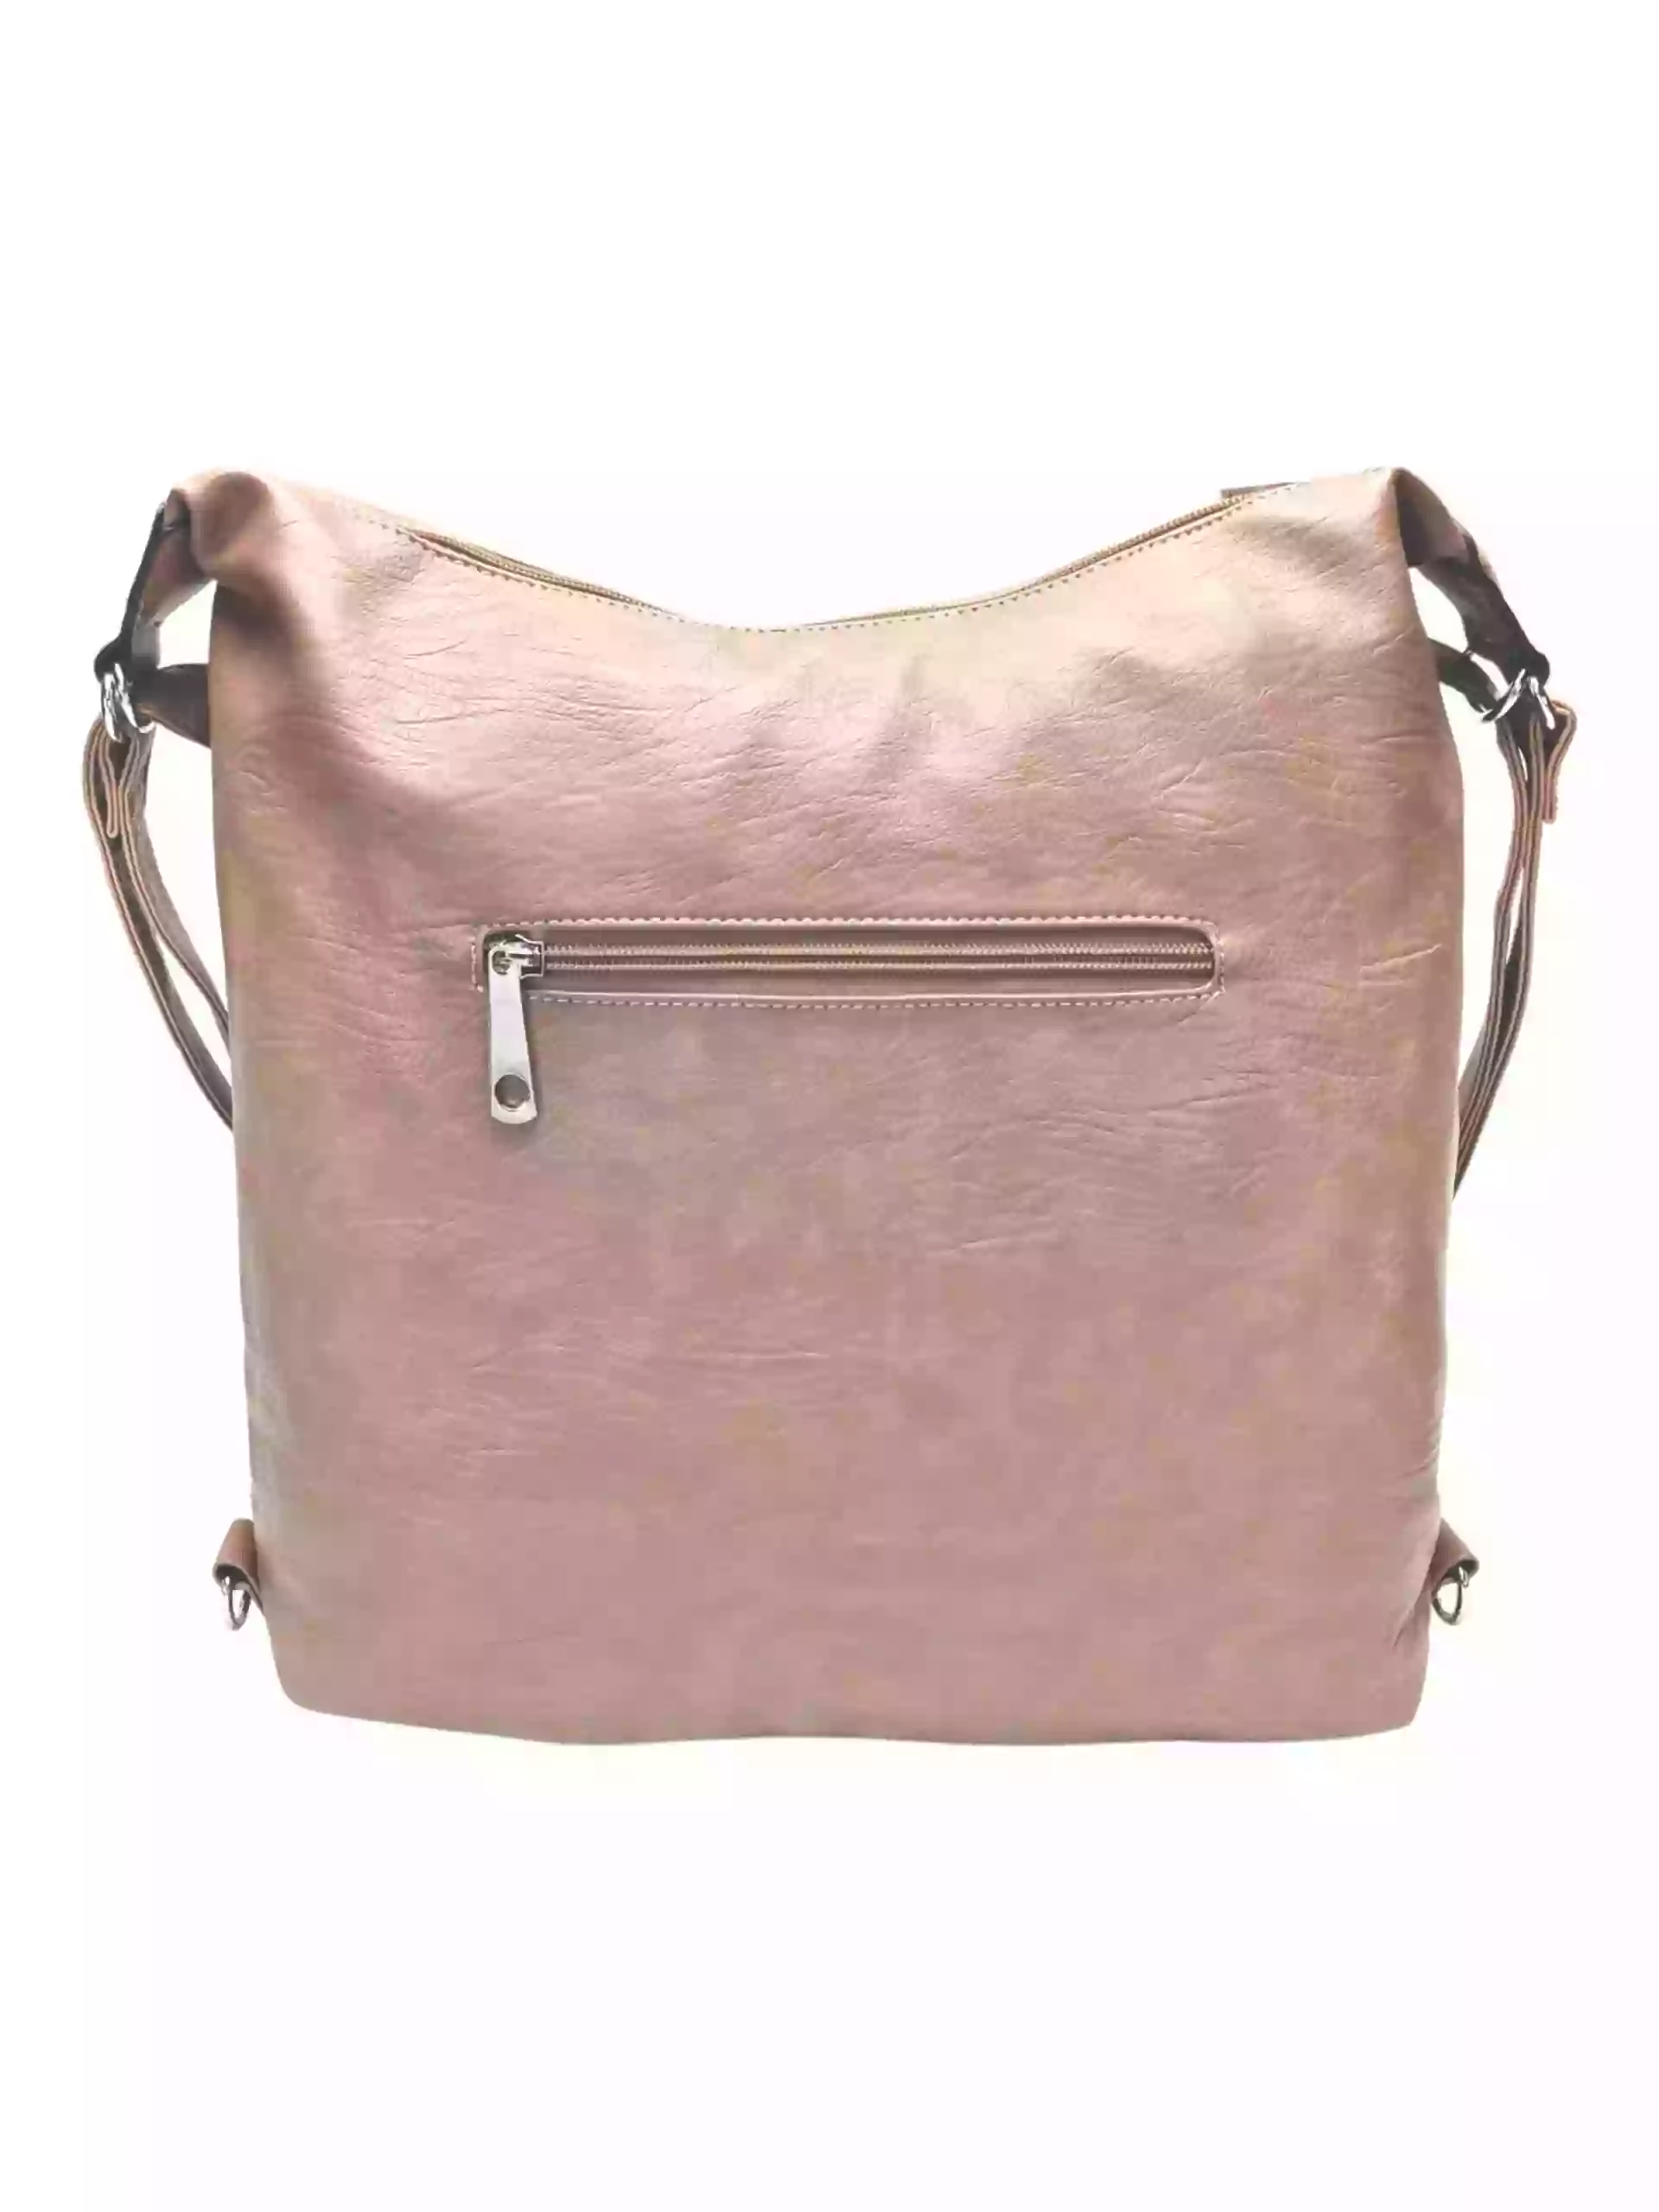 Velký hnědošedý kabelko-batoh 2v1 s kapsami, Tapple, H23029, zadní strana kabelko-batohu 2v1